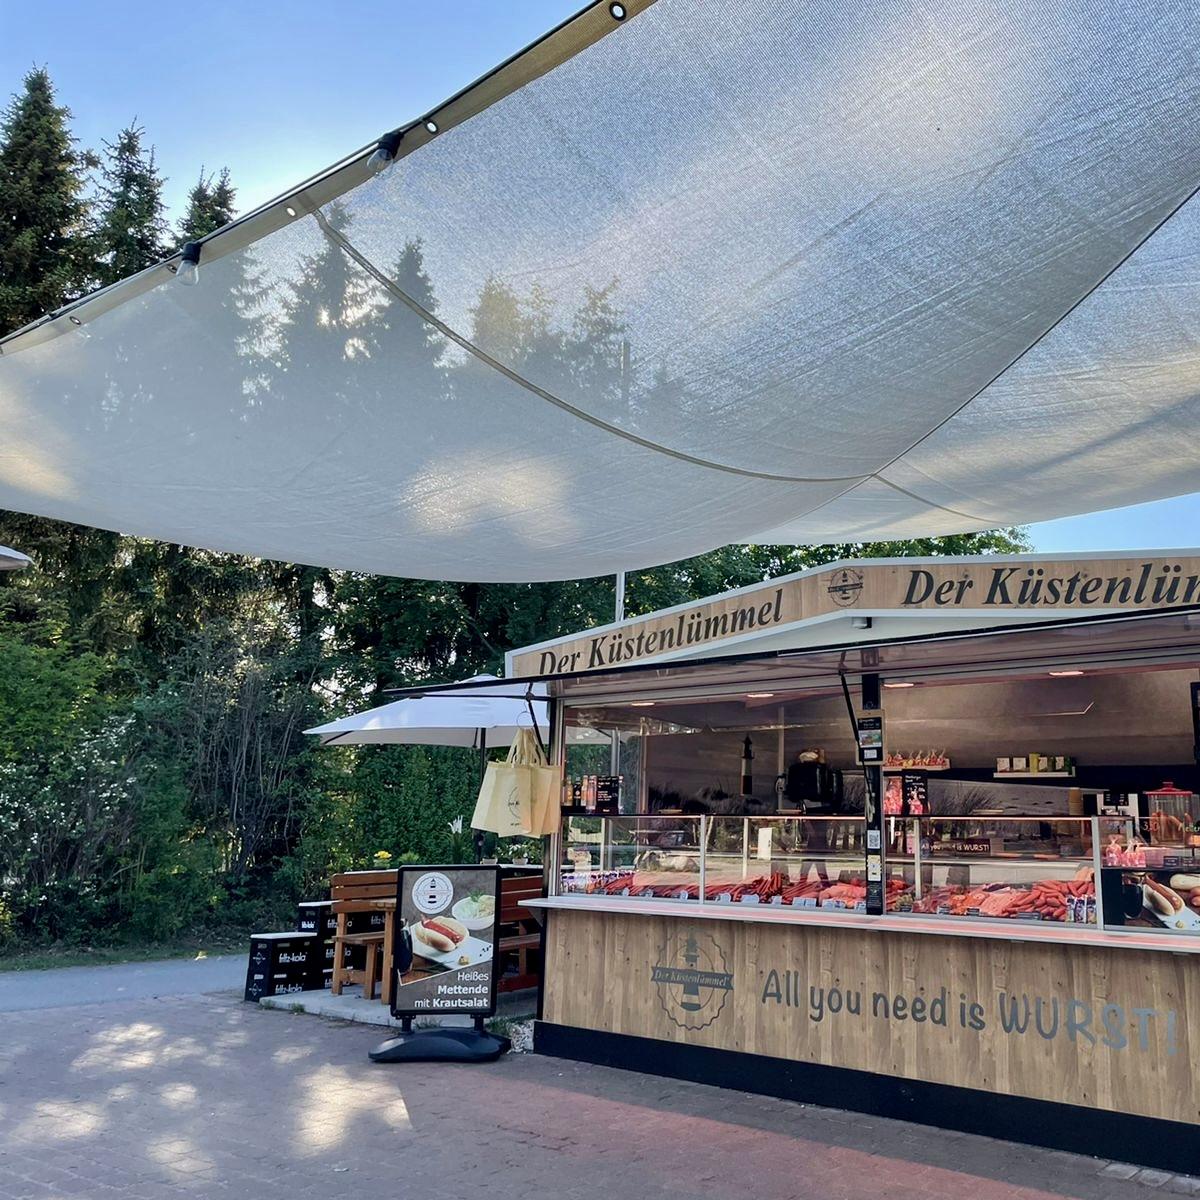 Restaurant "Der Küstenlümmel" in Wietzendorf